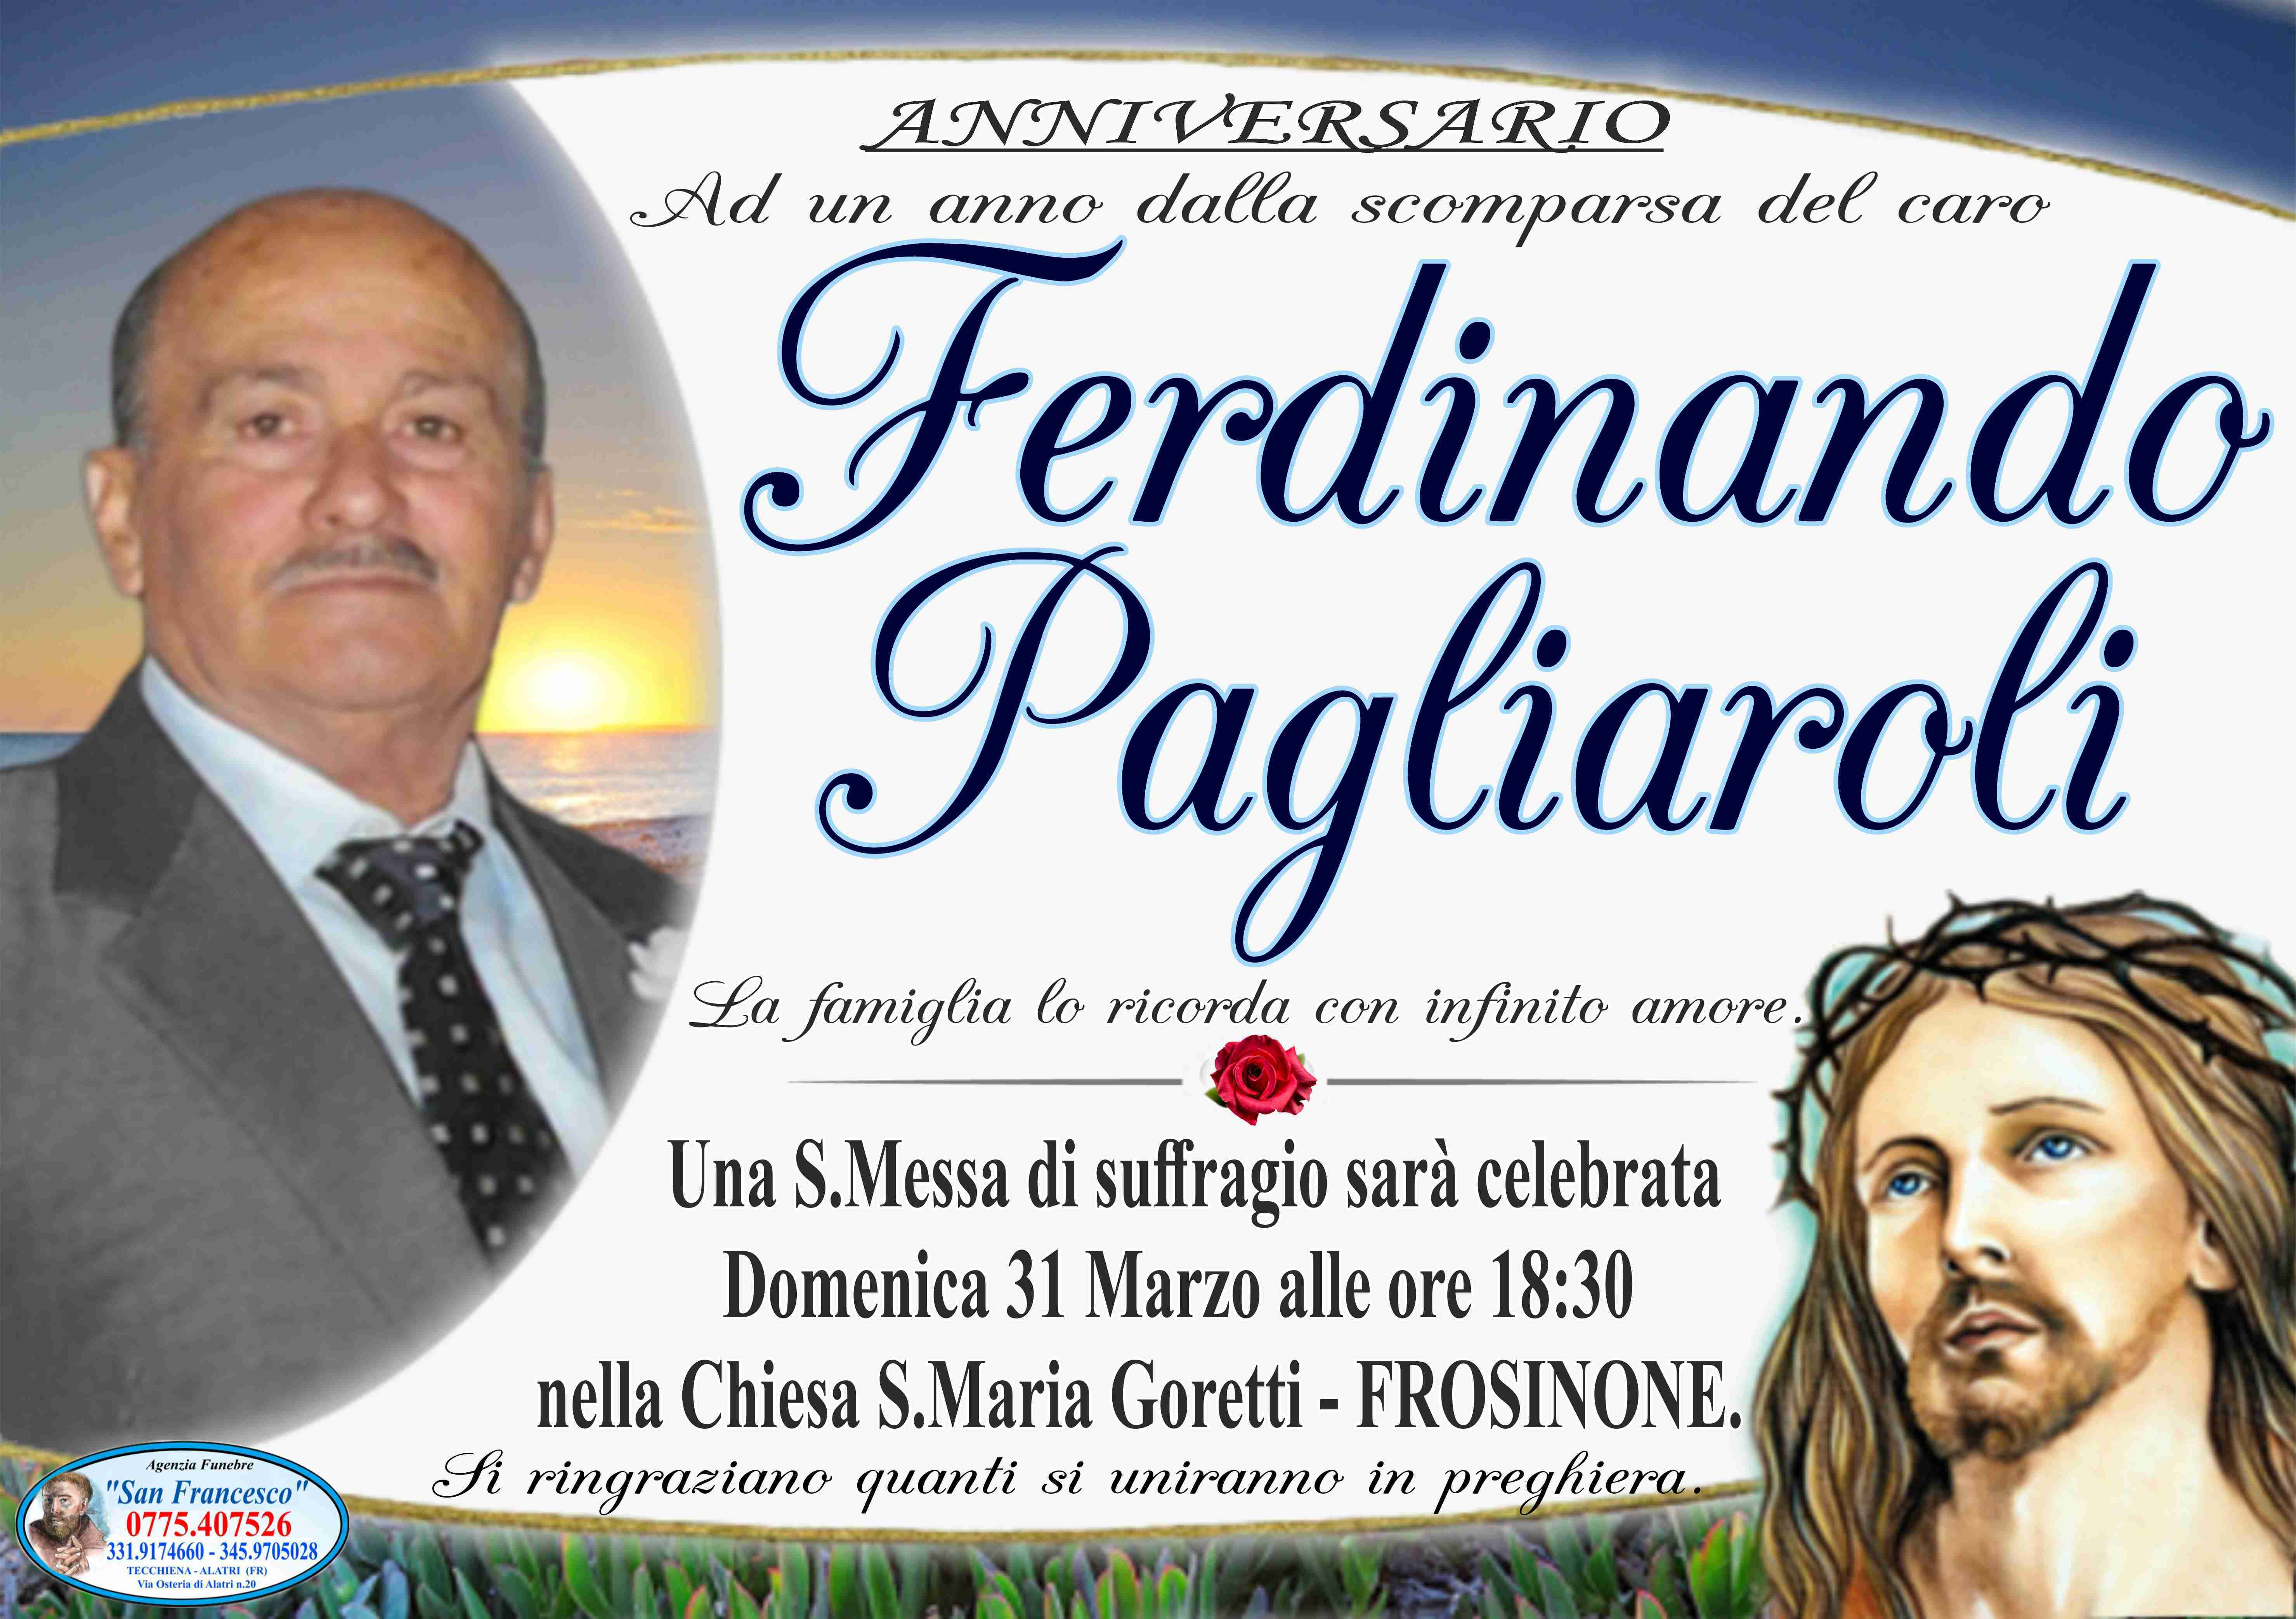 Ferdinando Pagliaroli